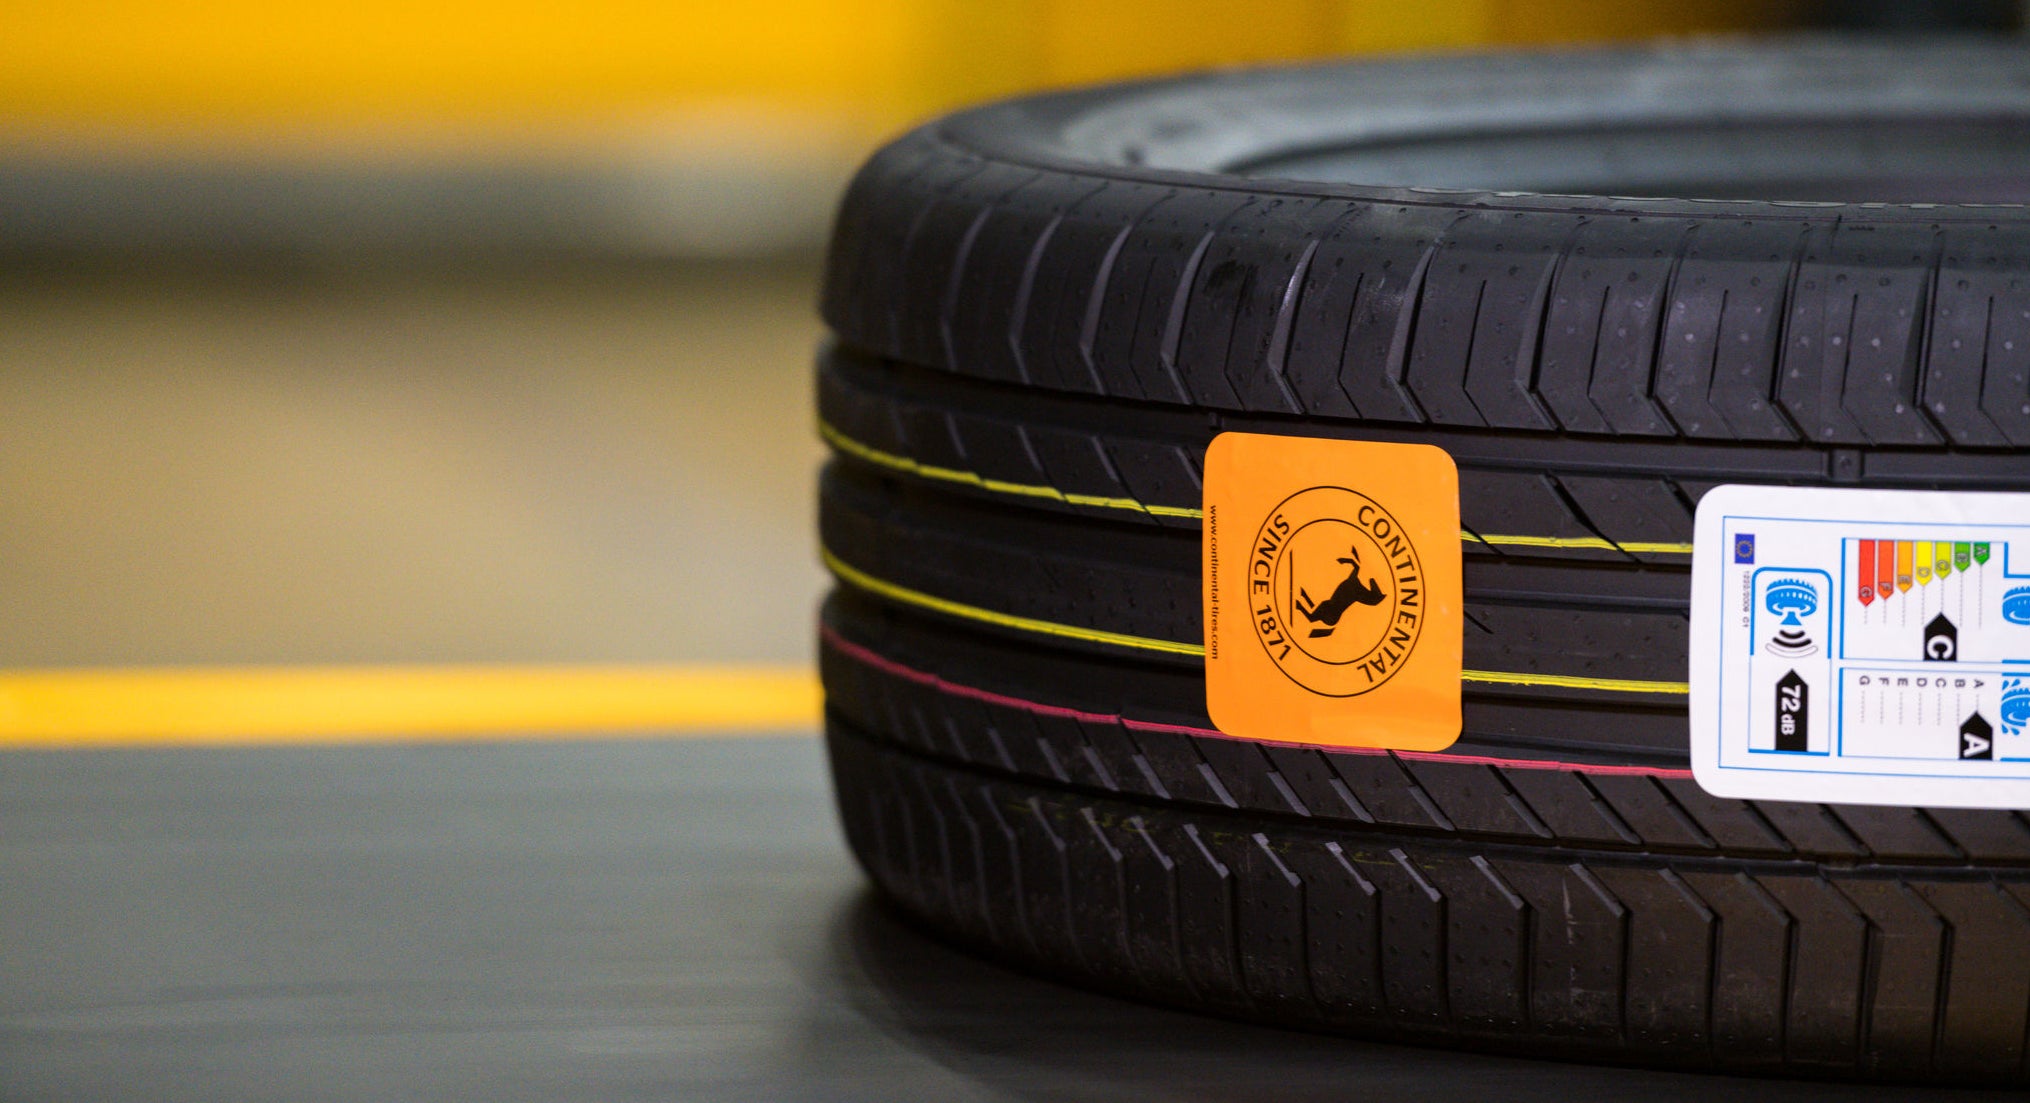 (foto de pneu deitado na esteira de produção, com etiqueta com ícone da Continental colado na banda de rodagem)